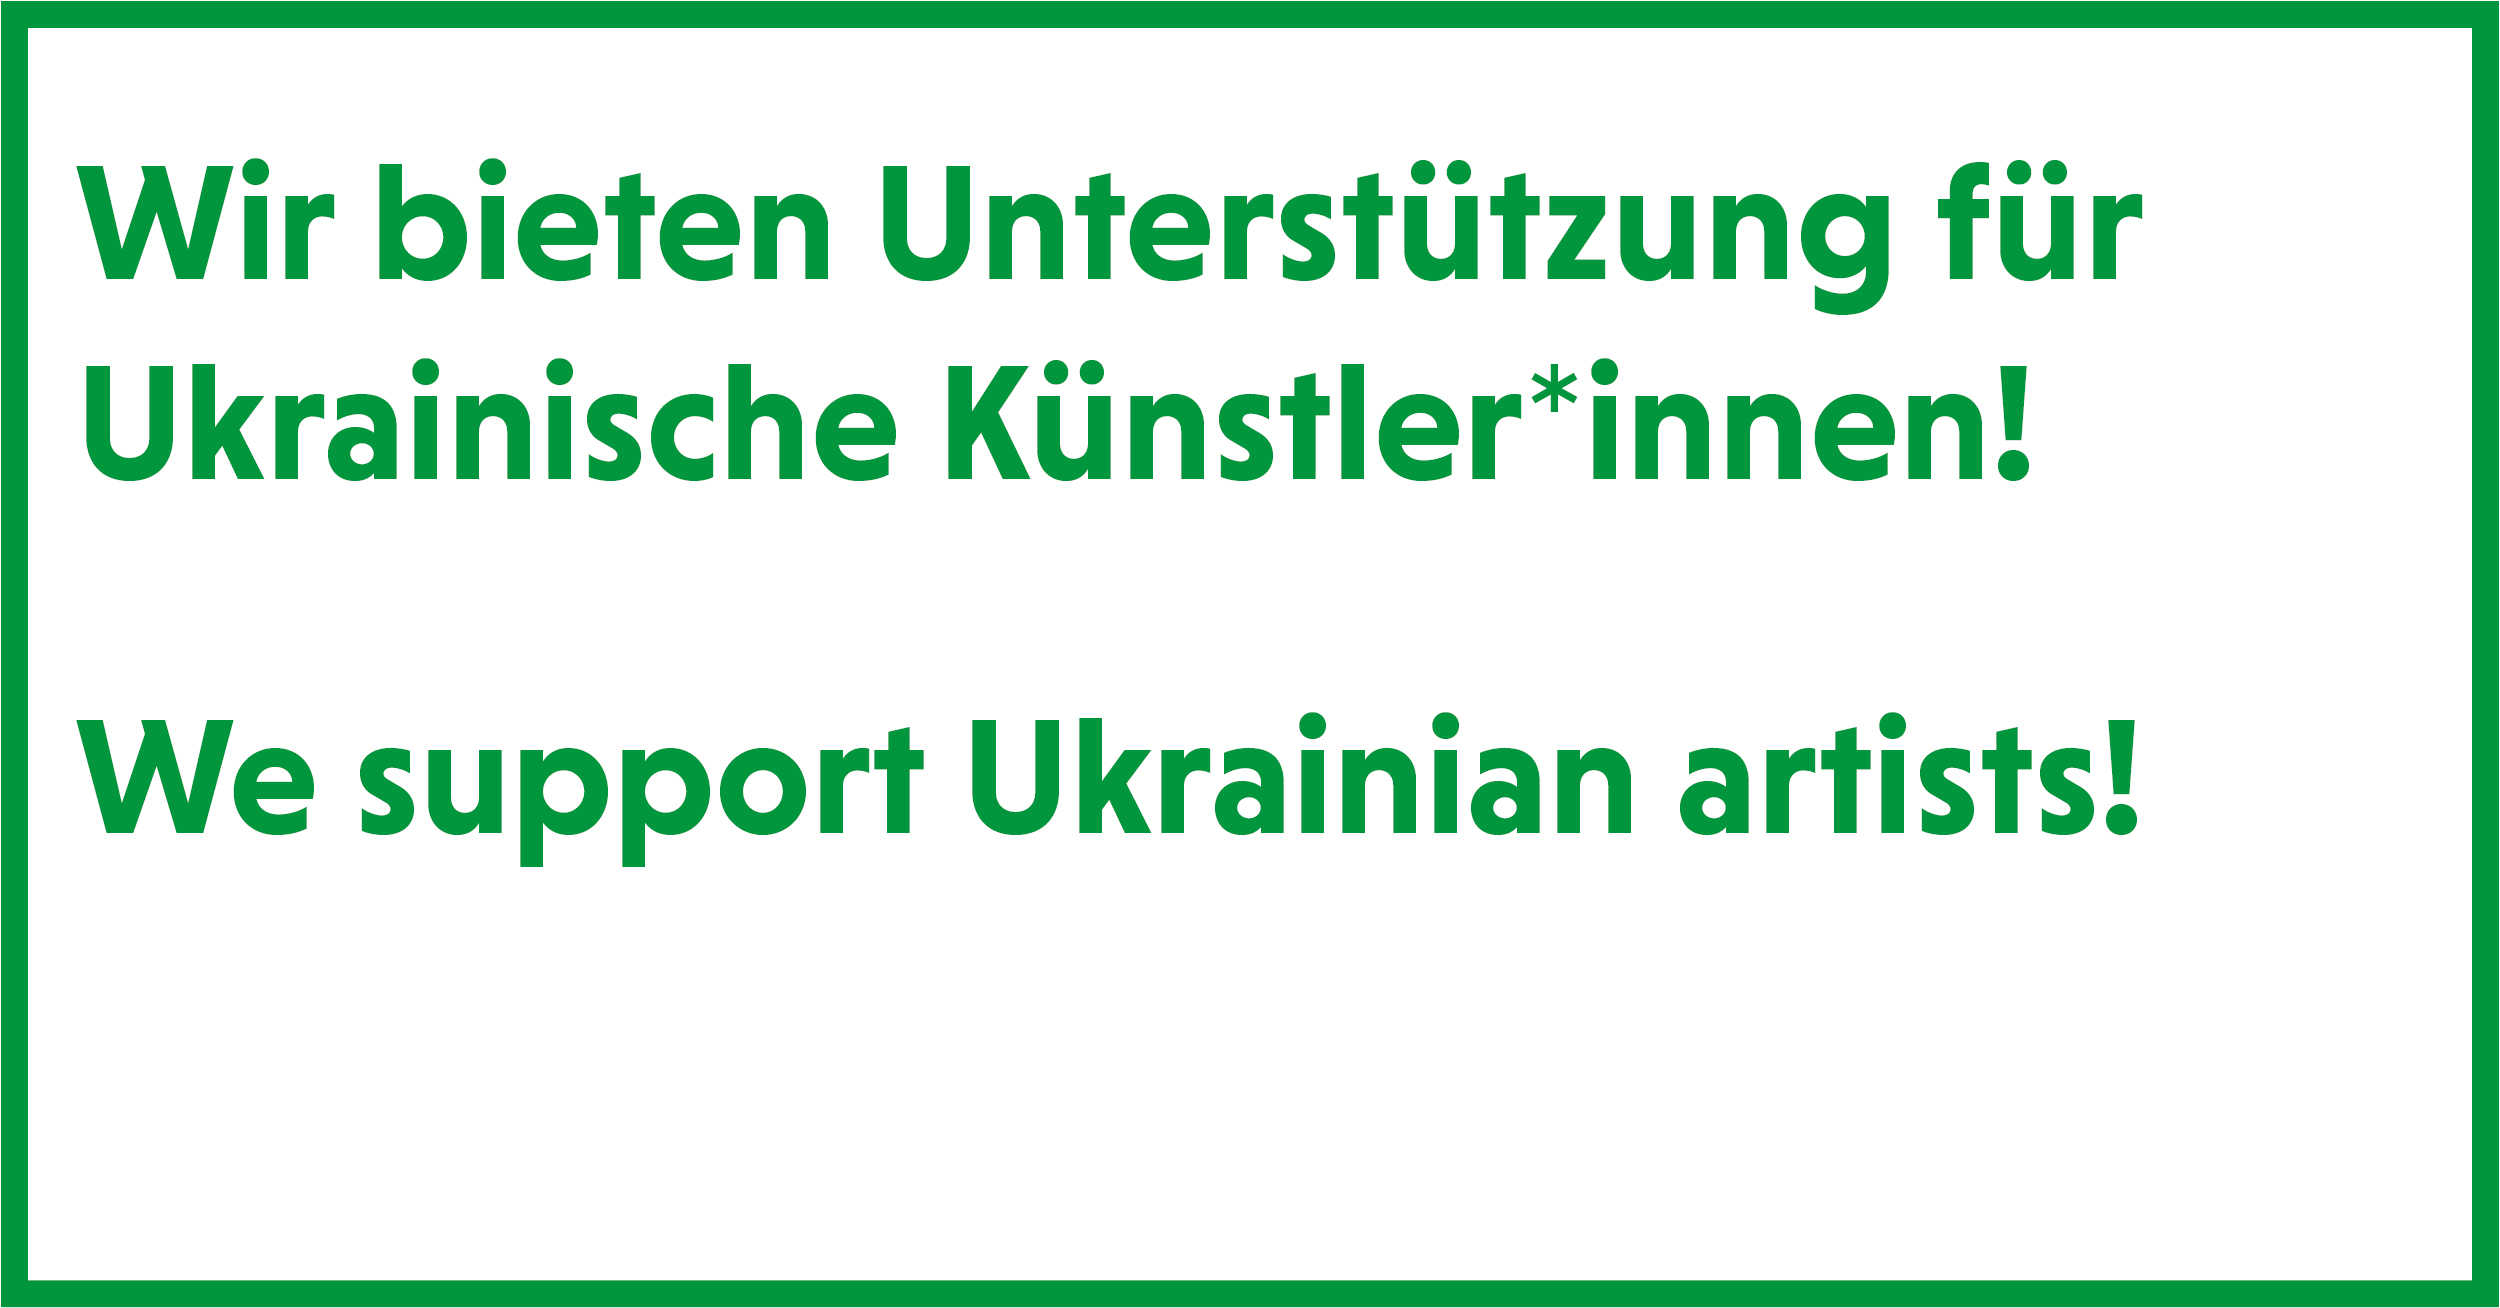 You are currently viewing Unterstützung für ukrainische Künstler*innen /<br>Support for Ukrainian artists